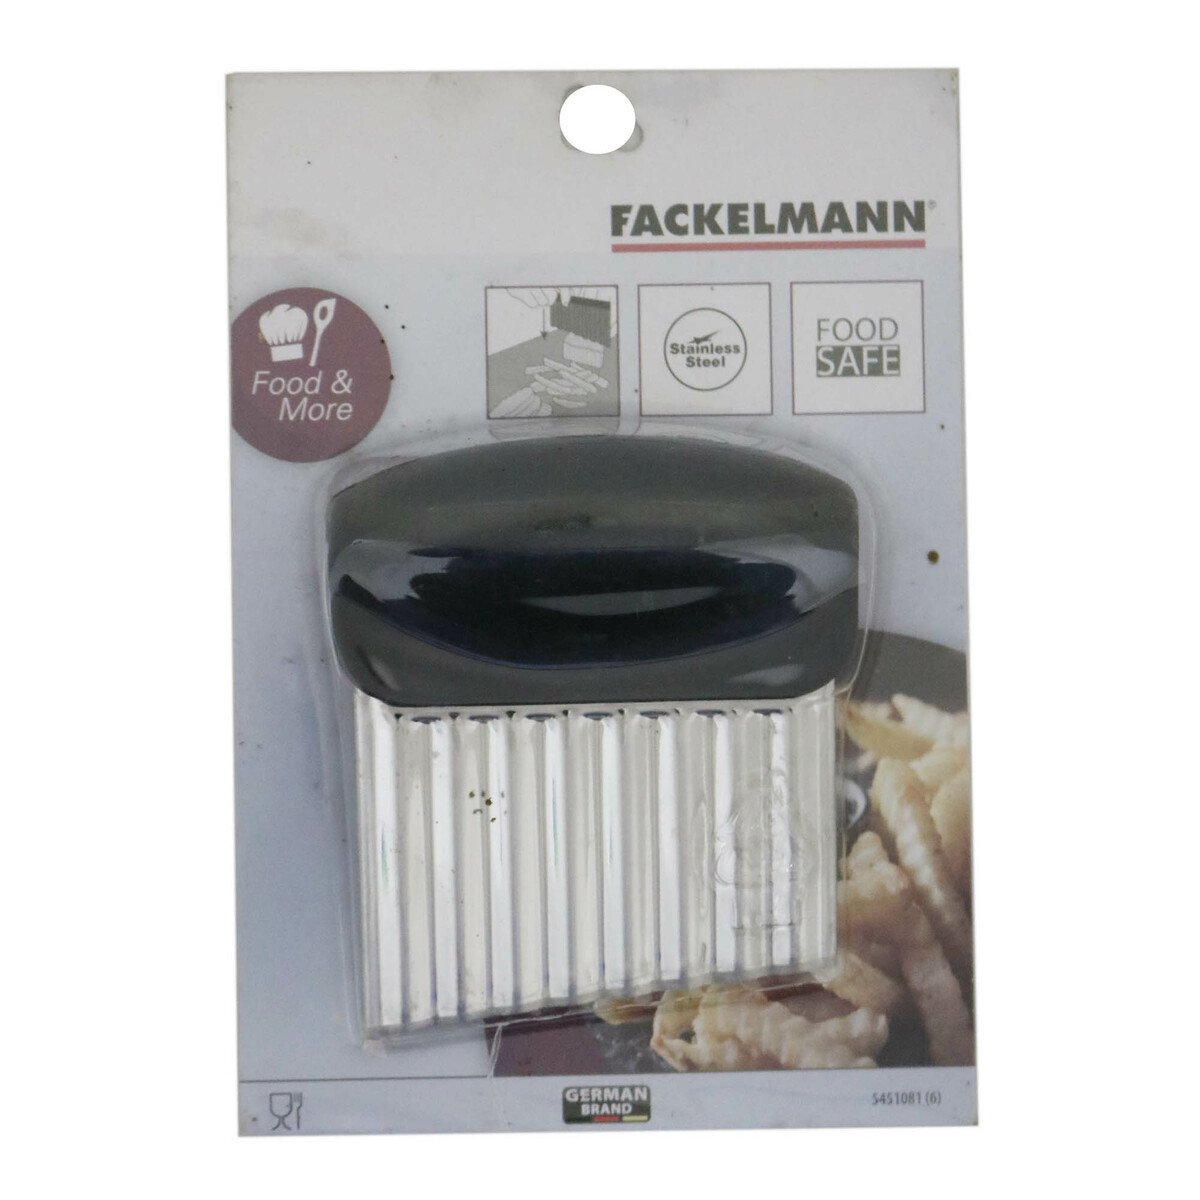 Fackelmann Potato Chips Cutter 5451081